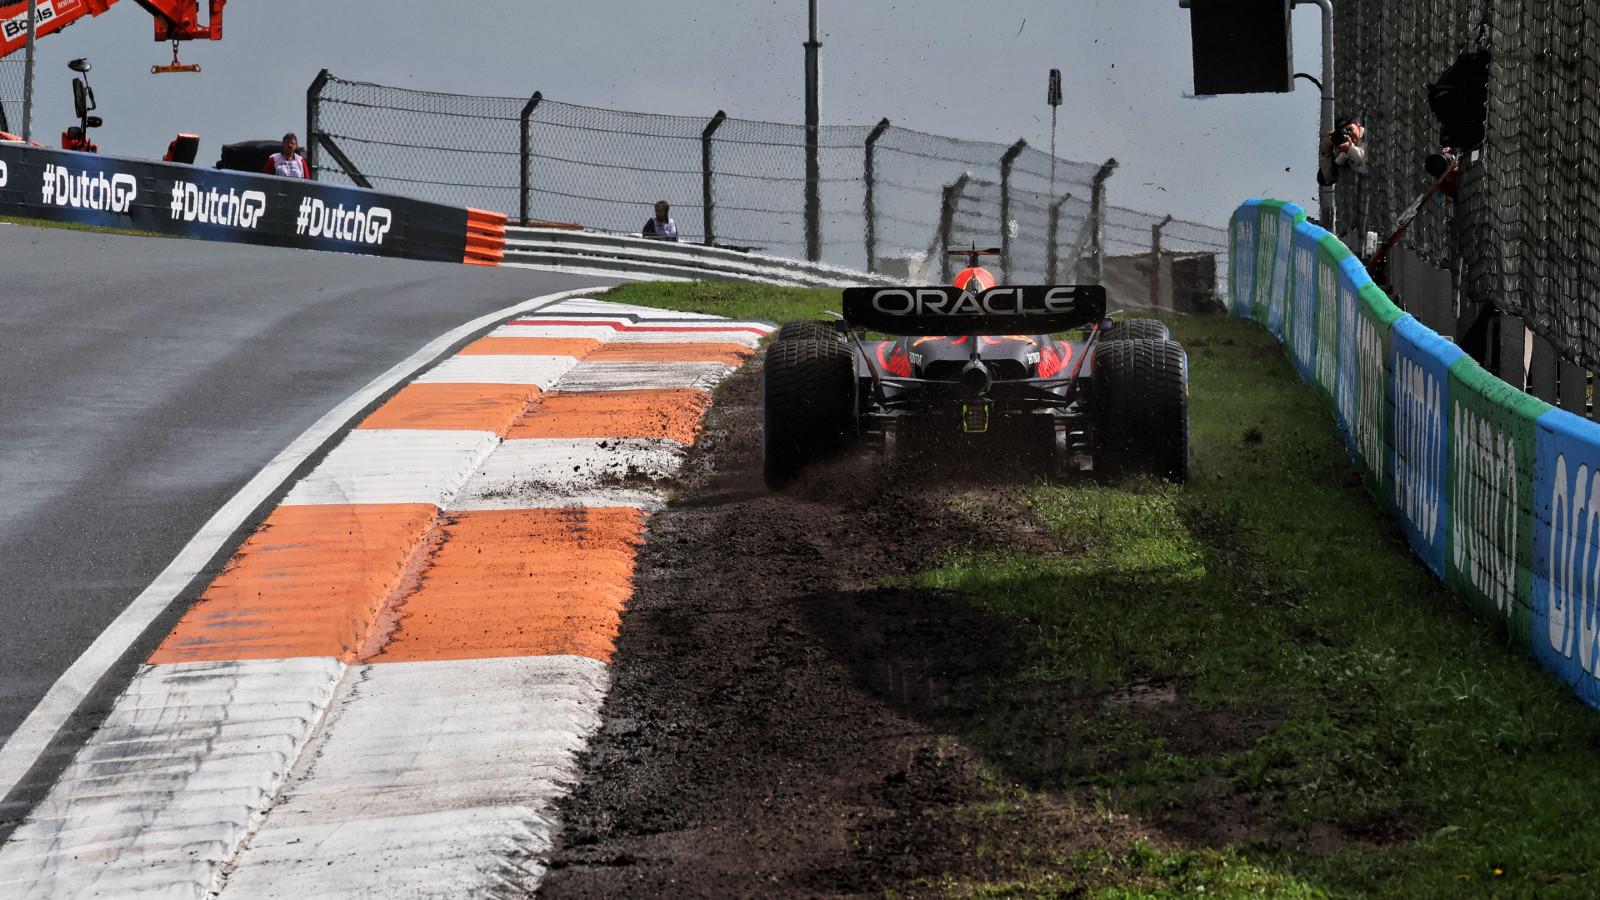 Dutch Grand Prix: Max Verstappen slides off during third practice at Zandvoort.